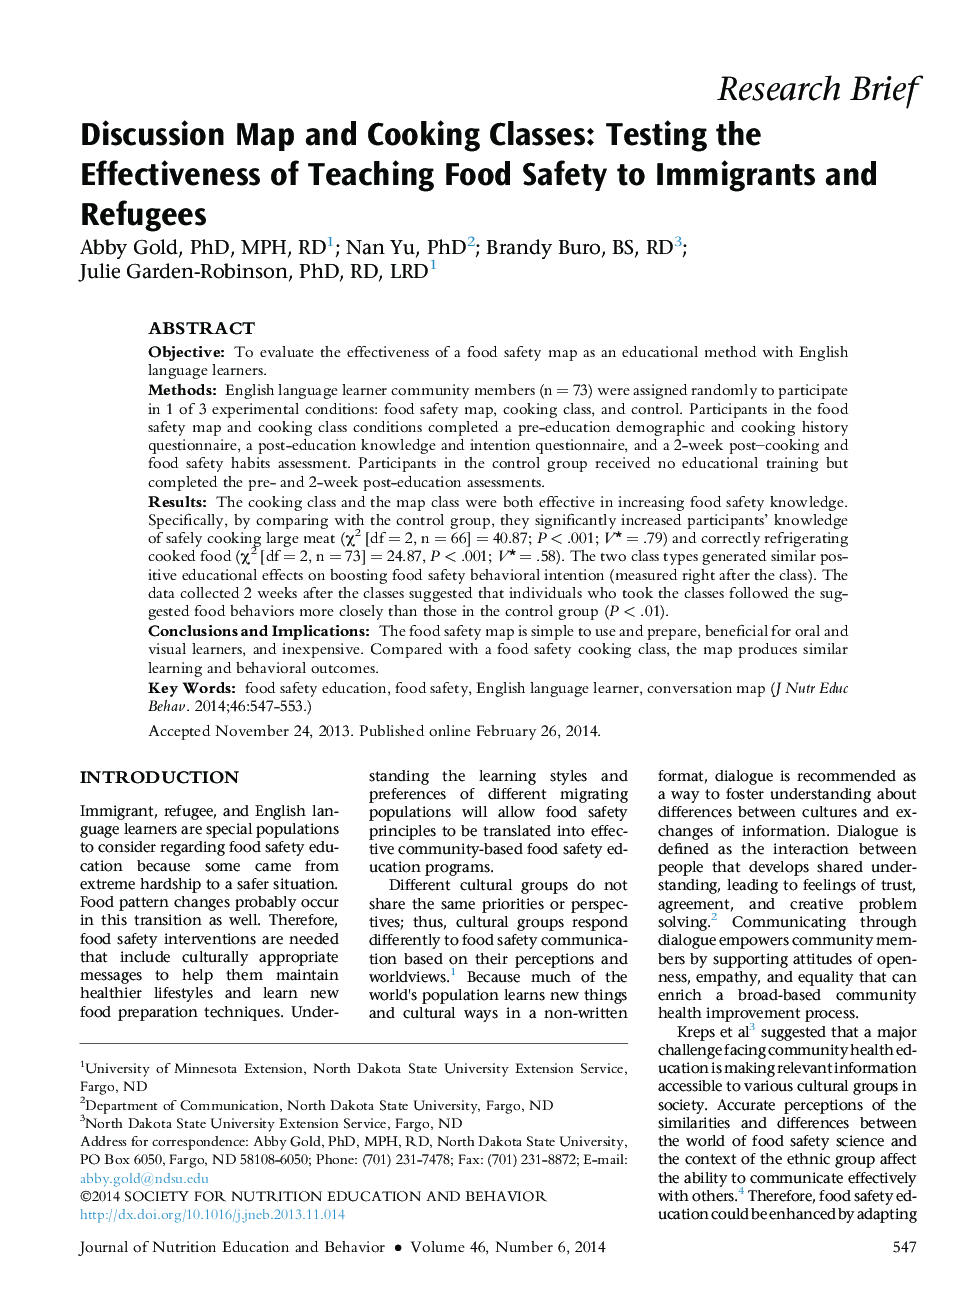 نقش بحث و پخت و پز در کلاس: آزمون اثربخشی آموزش ایمنی مواد غذایی به مهاجران و پناهندگان